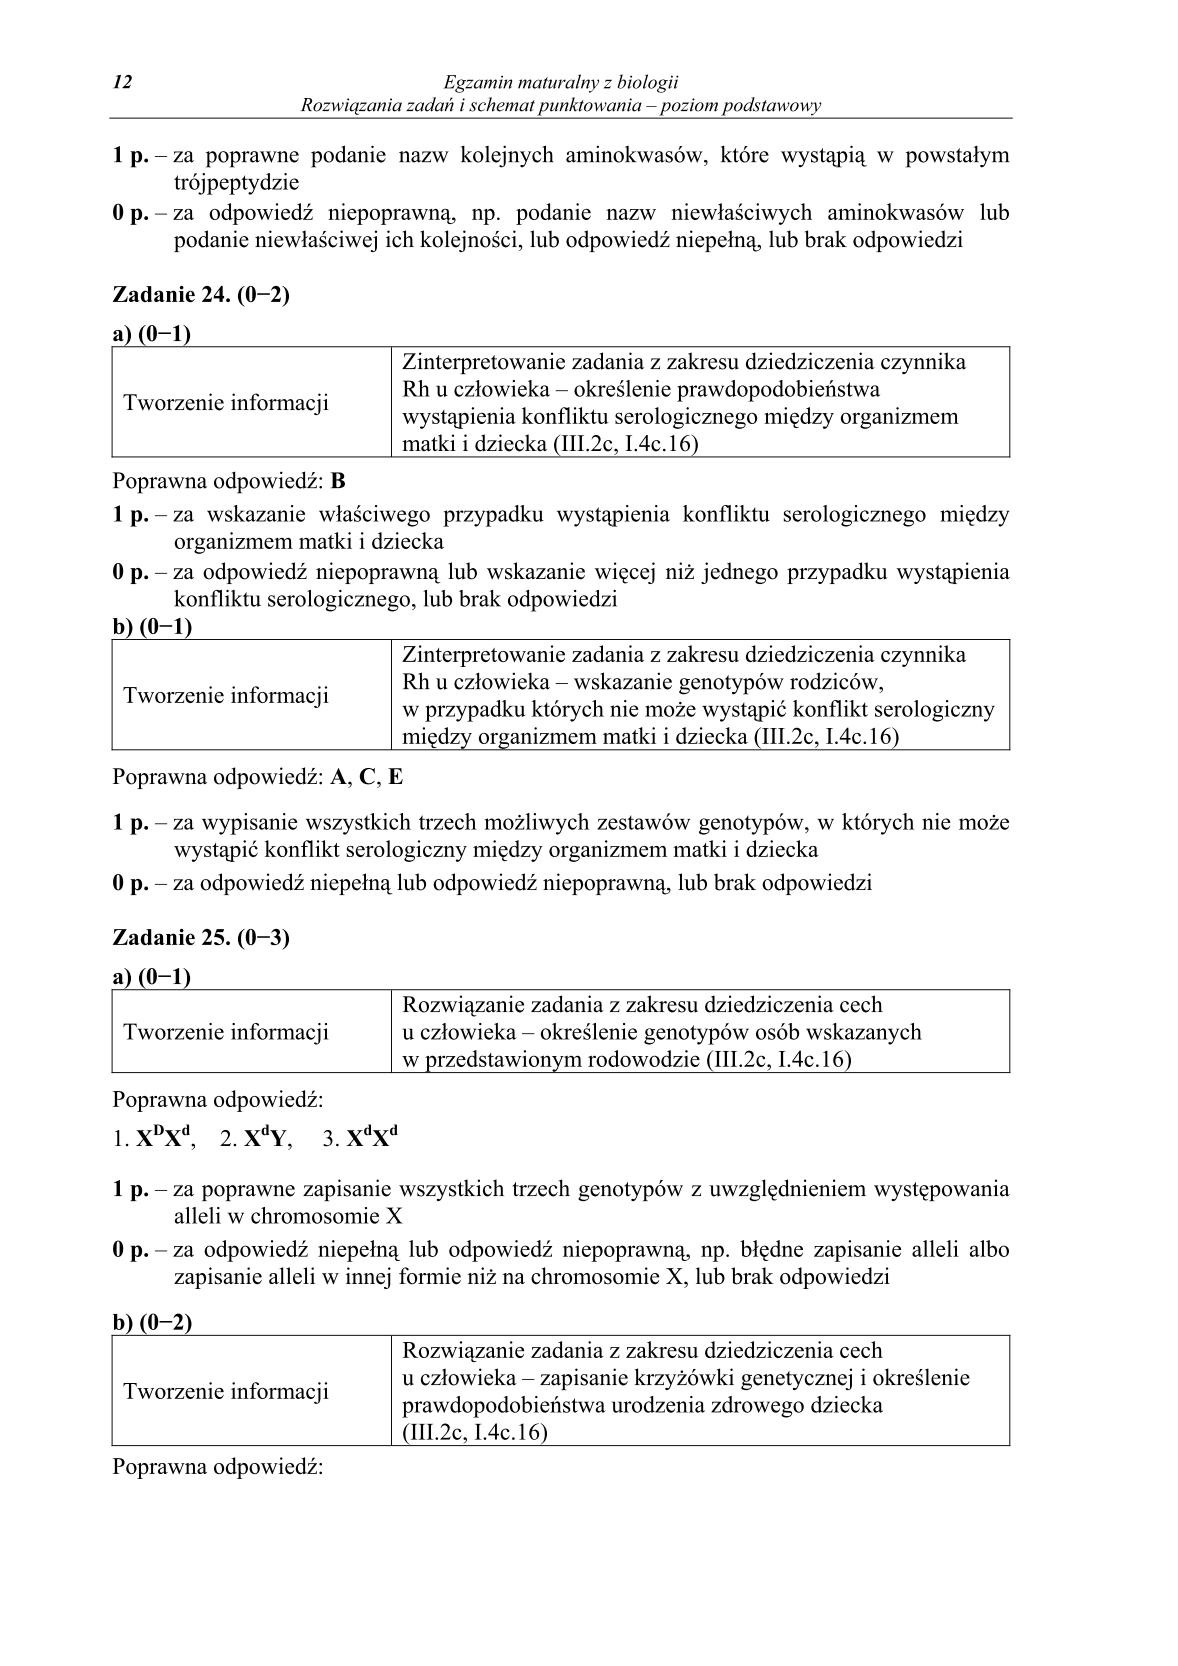 odpowiedzi-biologia-poziom-podstawowy-matura-2014-str.12